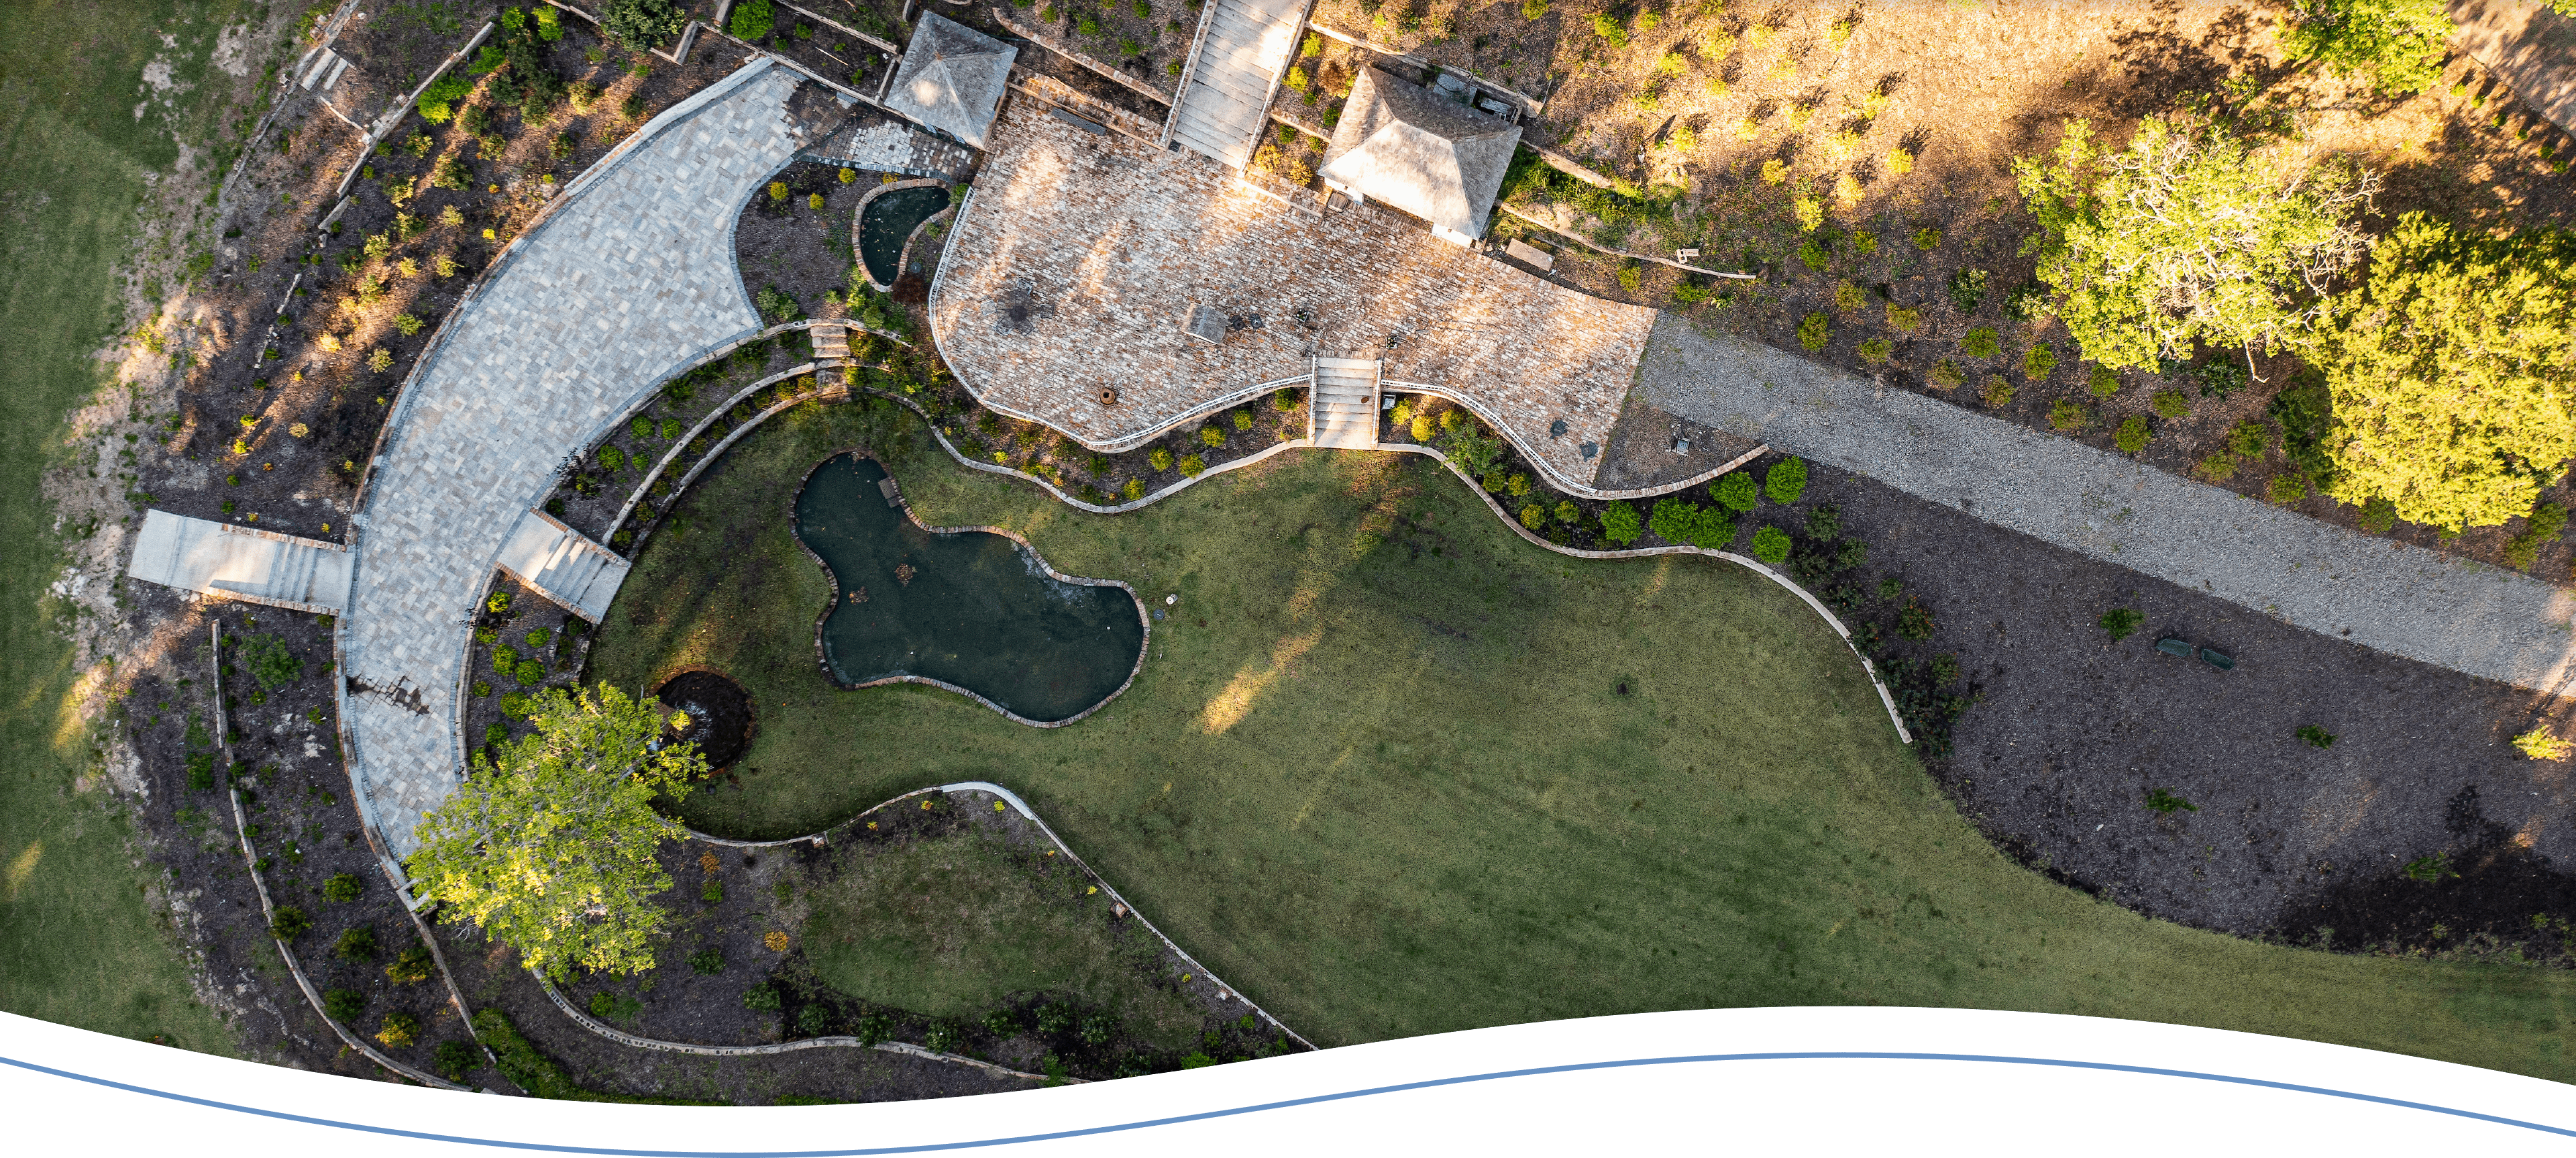 An aerial view of Bath Gardens